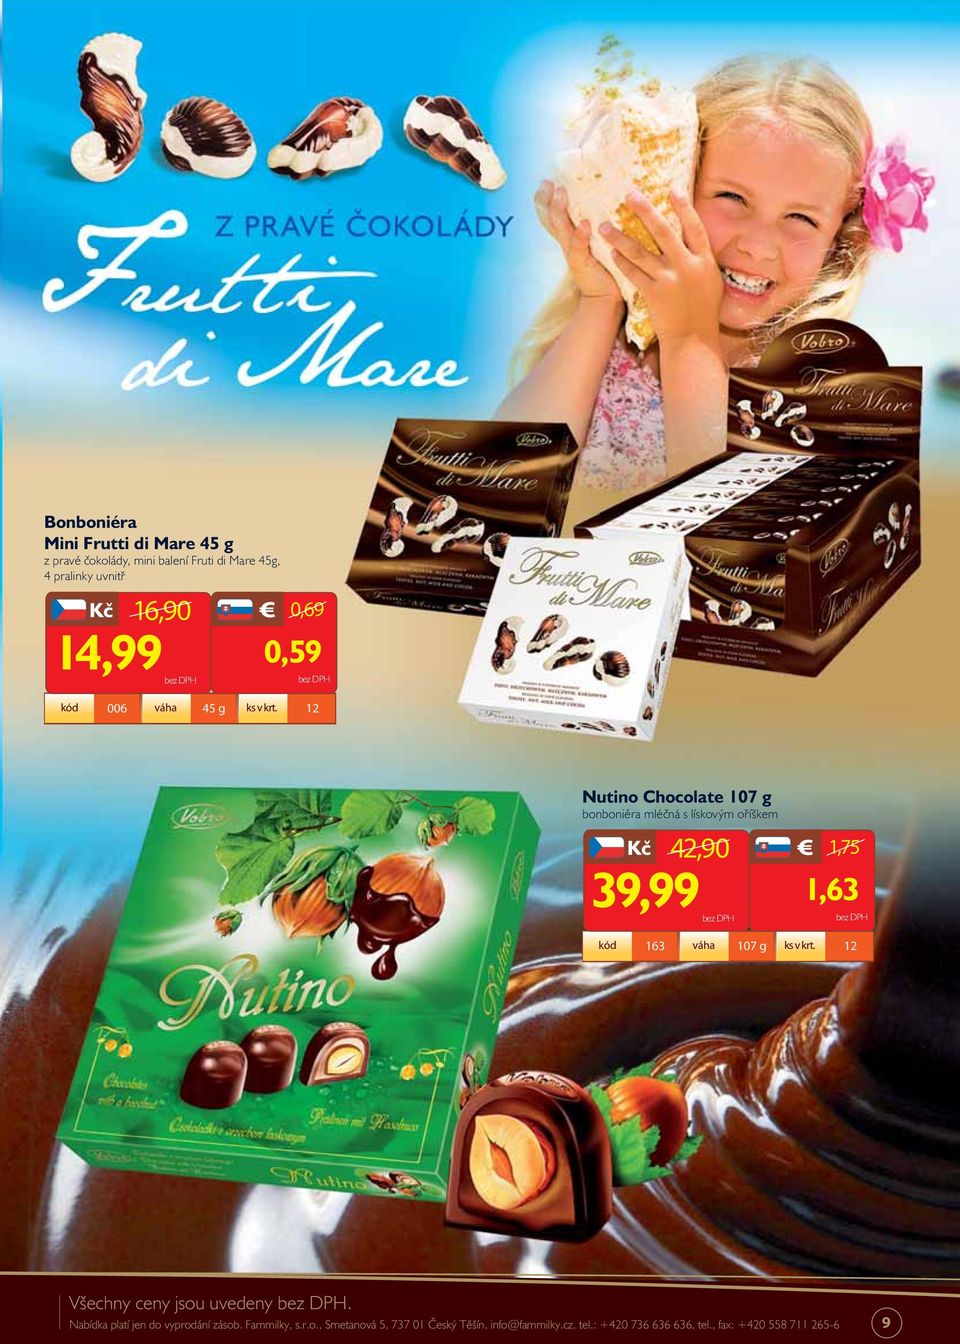 12 Nutino Chocolate 107 g bonboniéra mléčná s lískovým oříškem 42,90 1,75 39,99 1,63 kód 163 váha 107 g ks v krt.